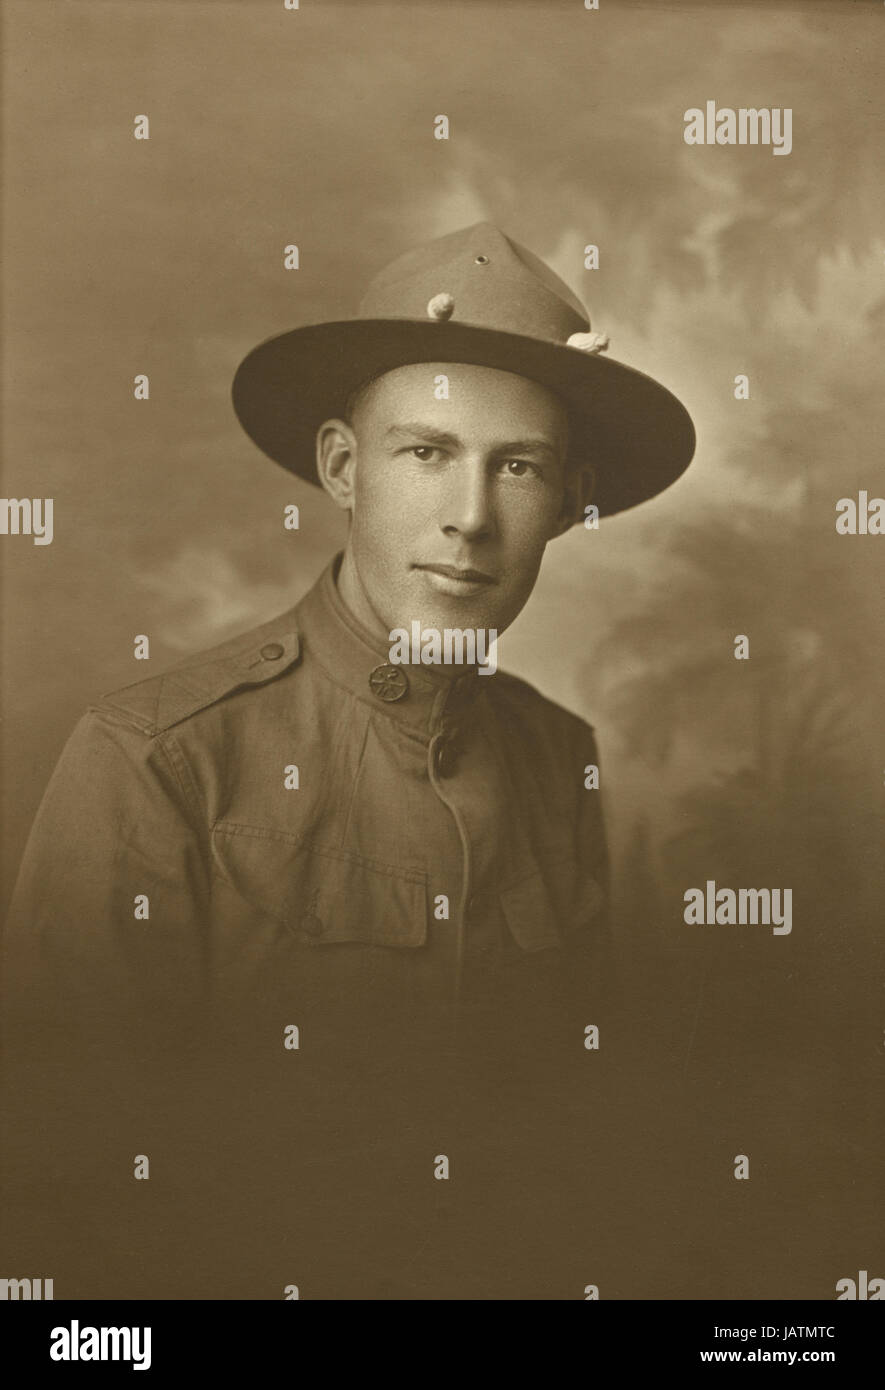 Antique c1917 fotografía, la I Guerra Mundial soldado usando el collar disco para 2º Regimiento de Infantería, la compañía H. soldado desconocido de Mankato, Minnesota. Fuente: fotografía original. Foto de stock